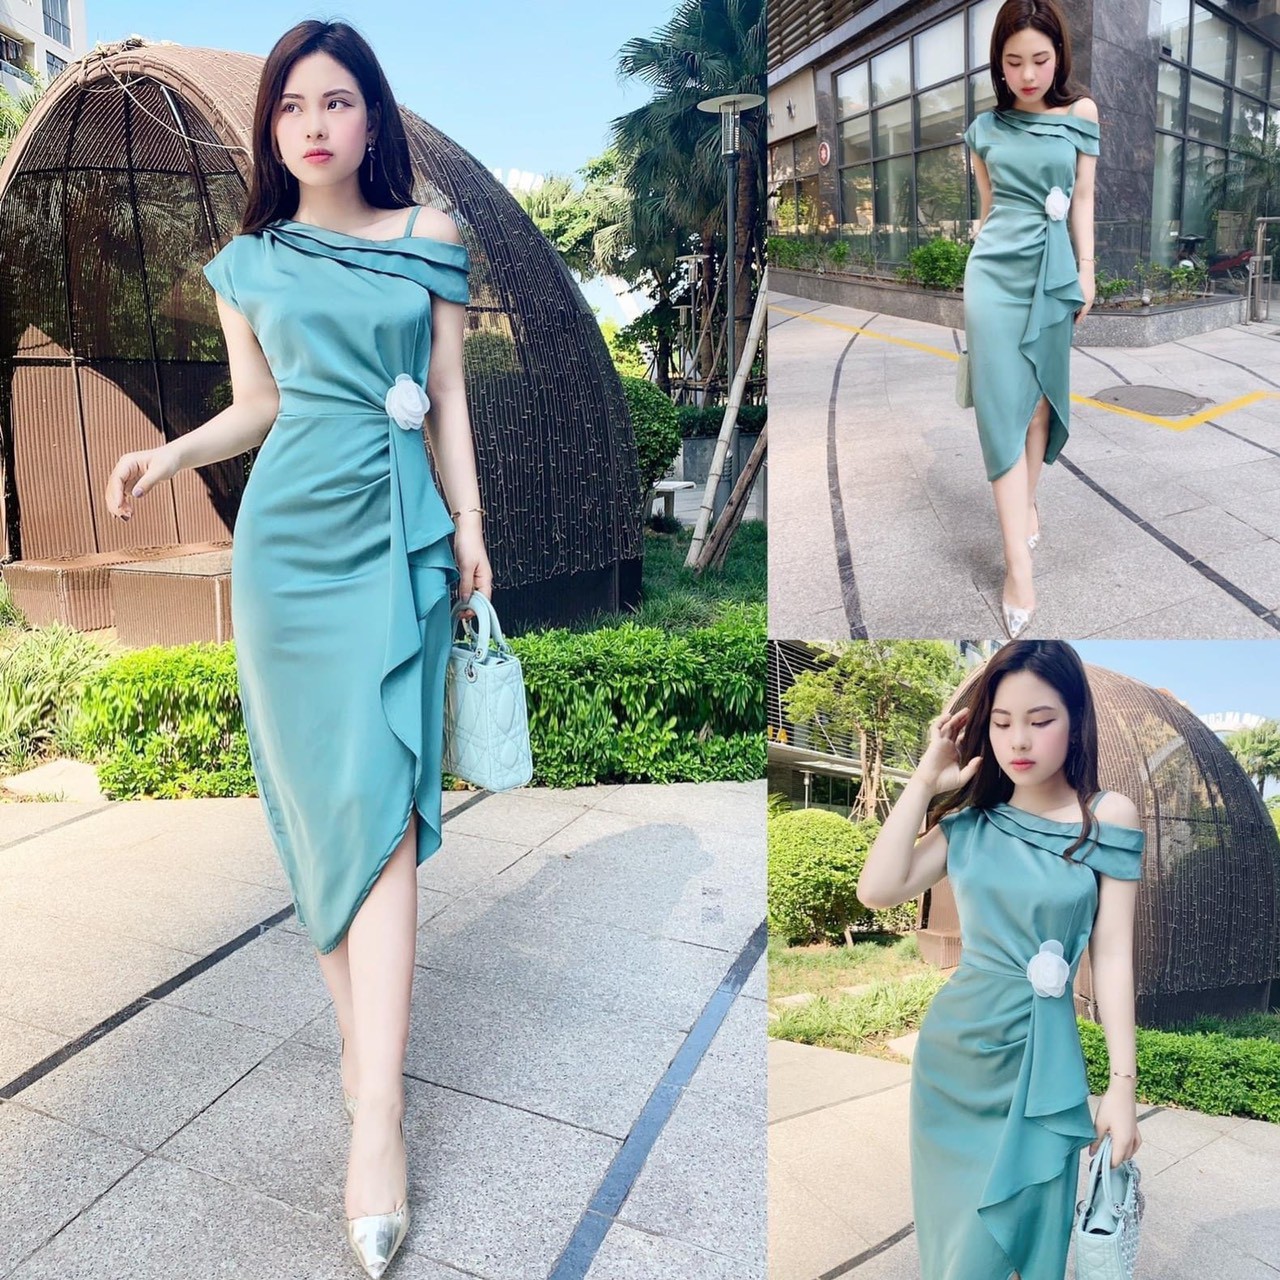 Phong cách với váy lệch vai sang trọng đẹp kiêu kỳ quyến rũ |  Vietnam.net.vn - Sàn thương mại điện tử